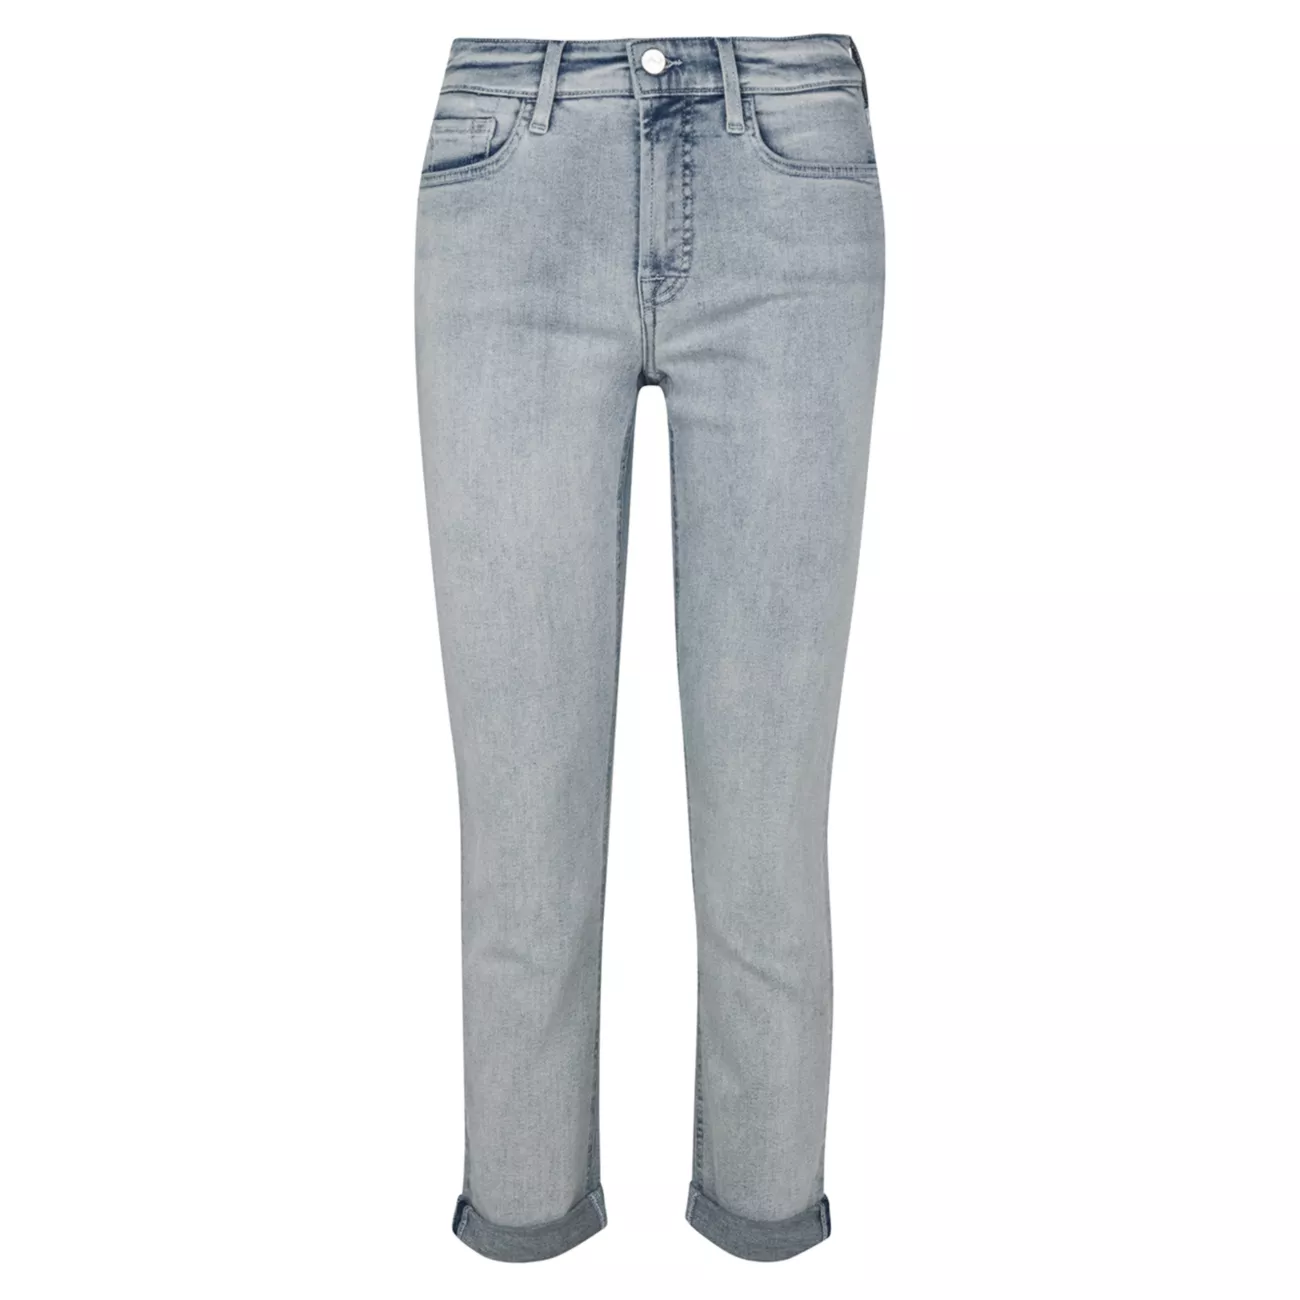 Узкие эластичные укороченные джинсы-бойфренды со средней посадкой JEN7